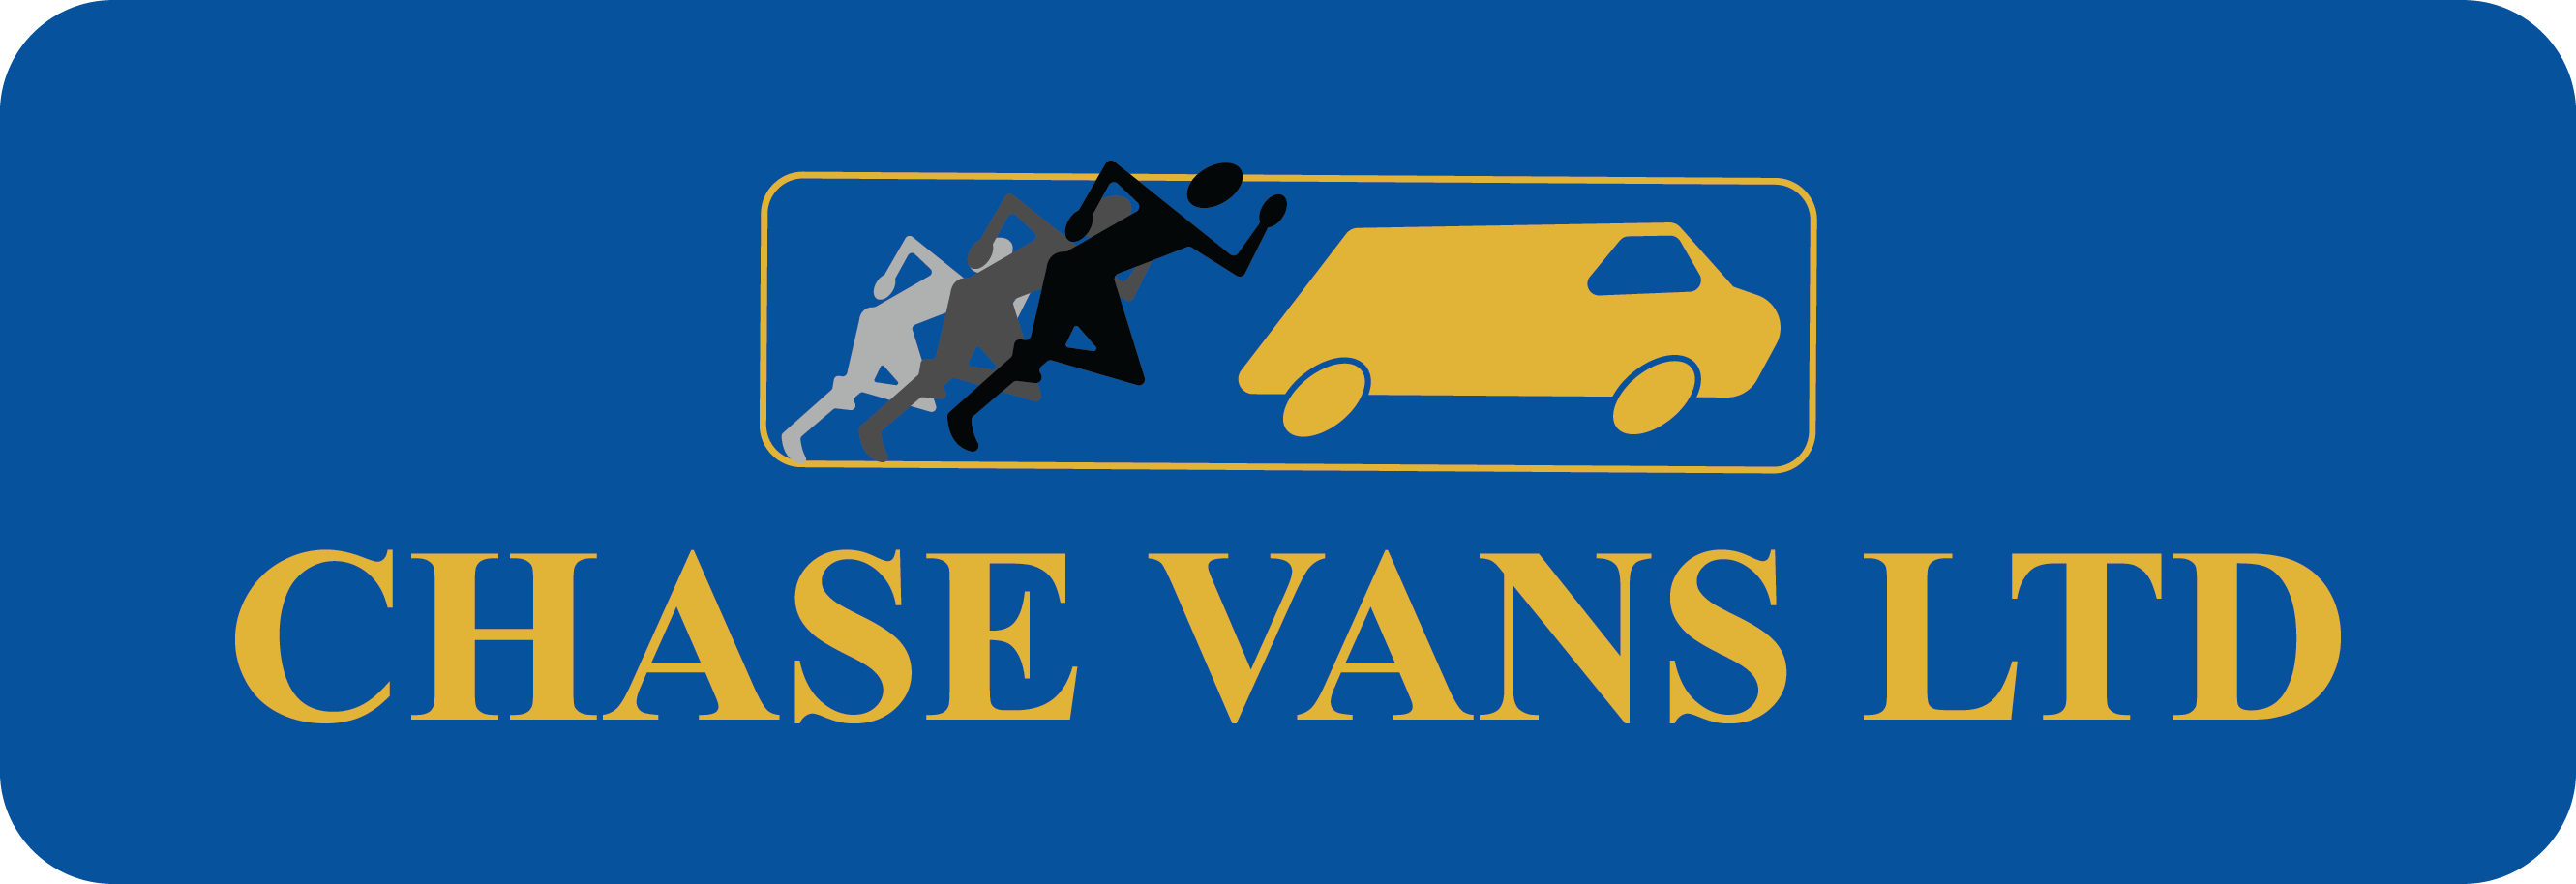 Chase Vans Ltd logo